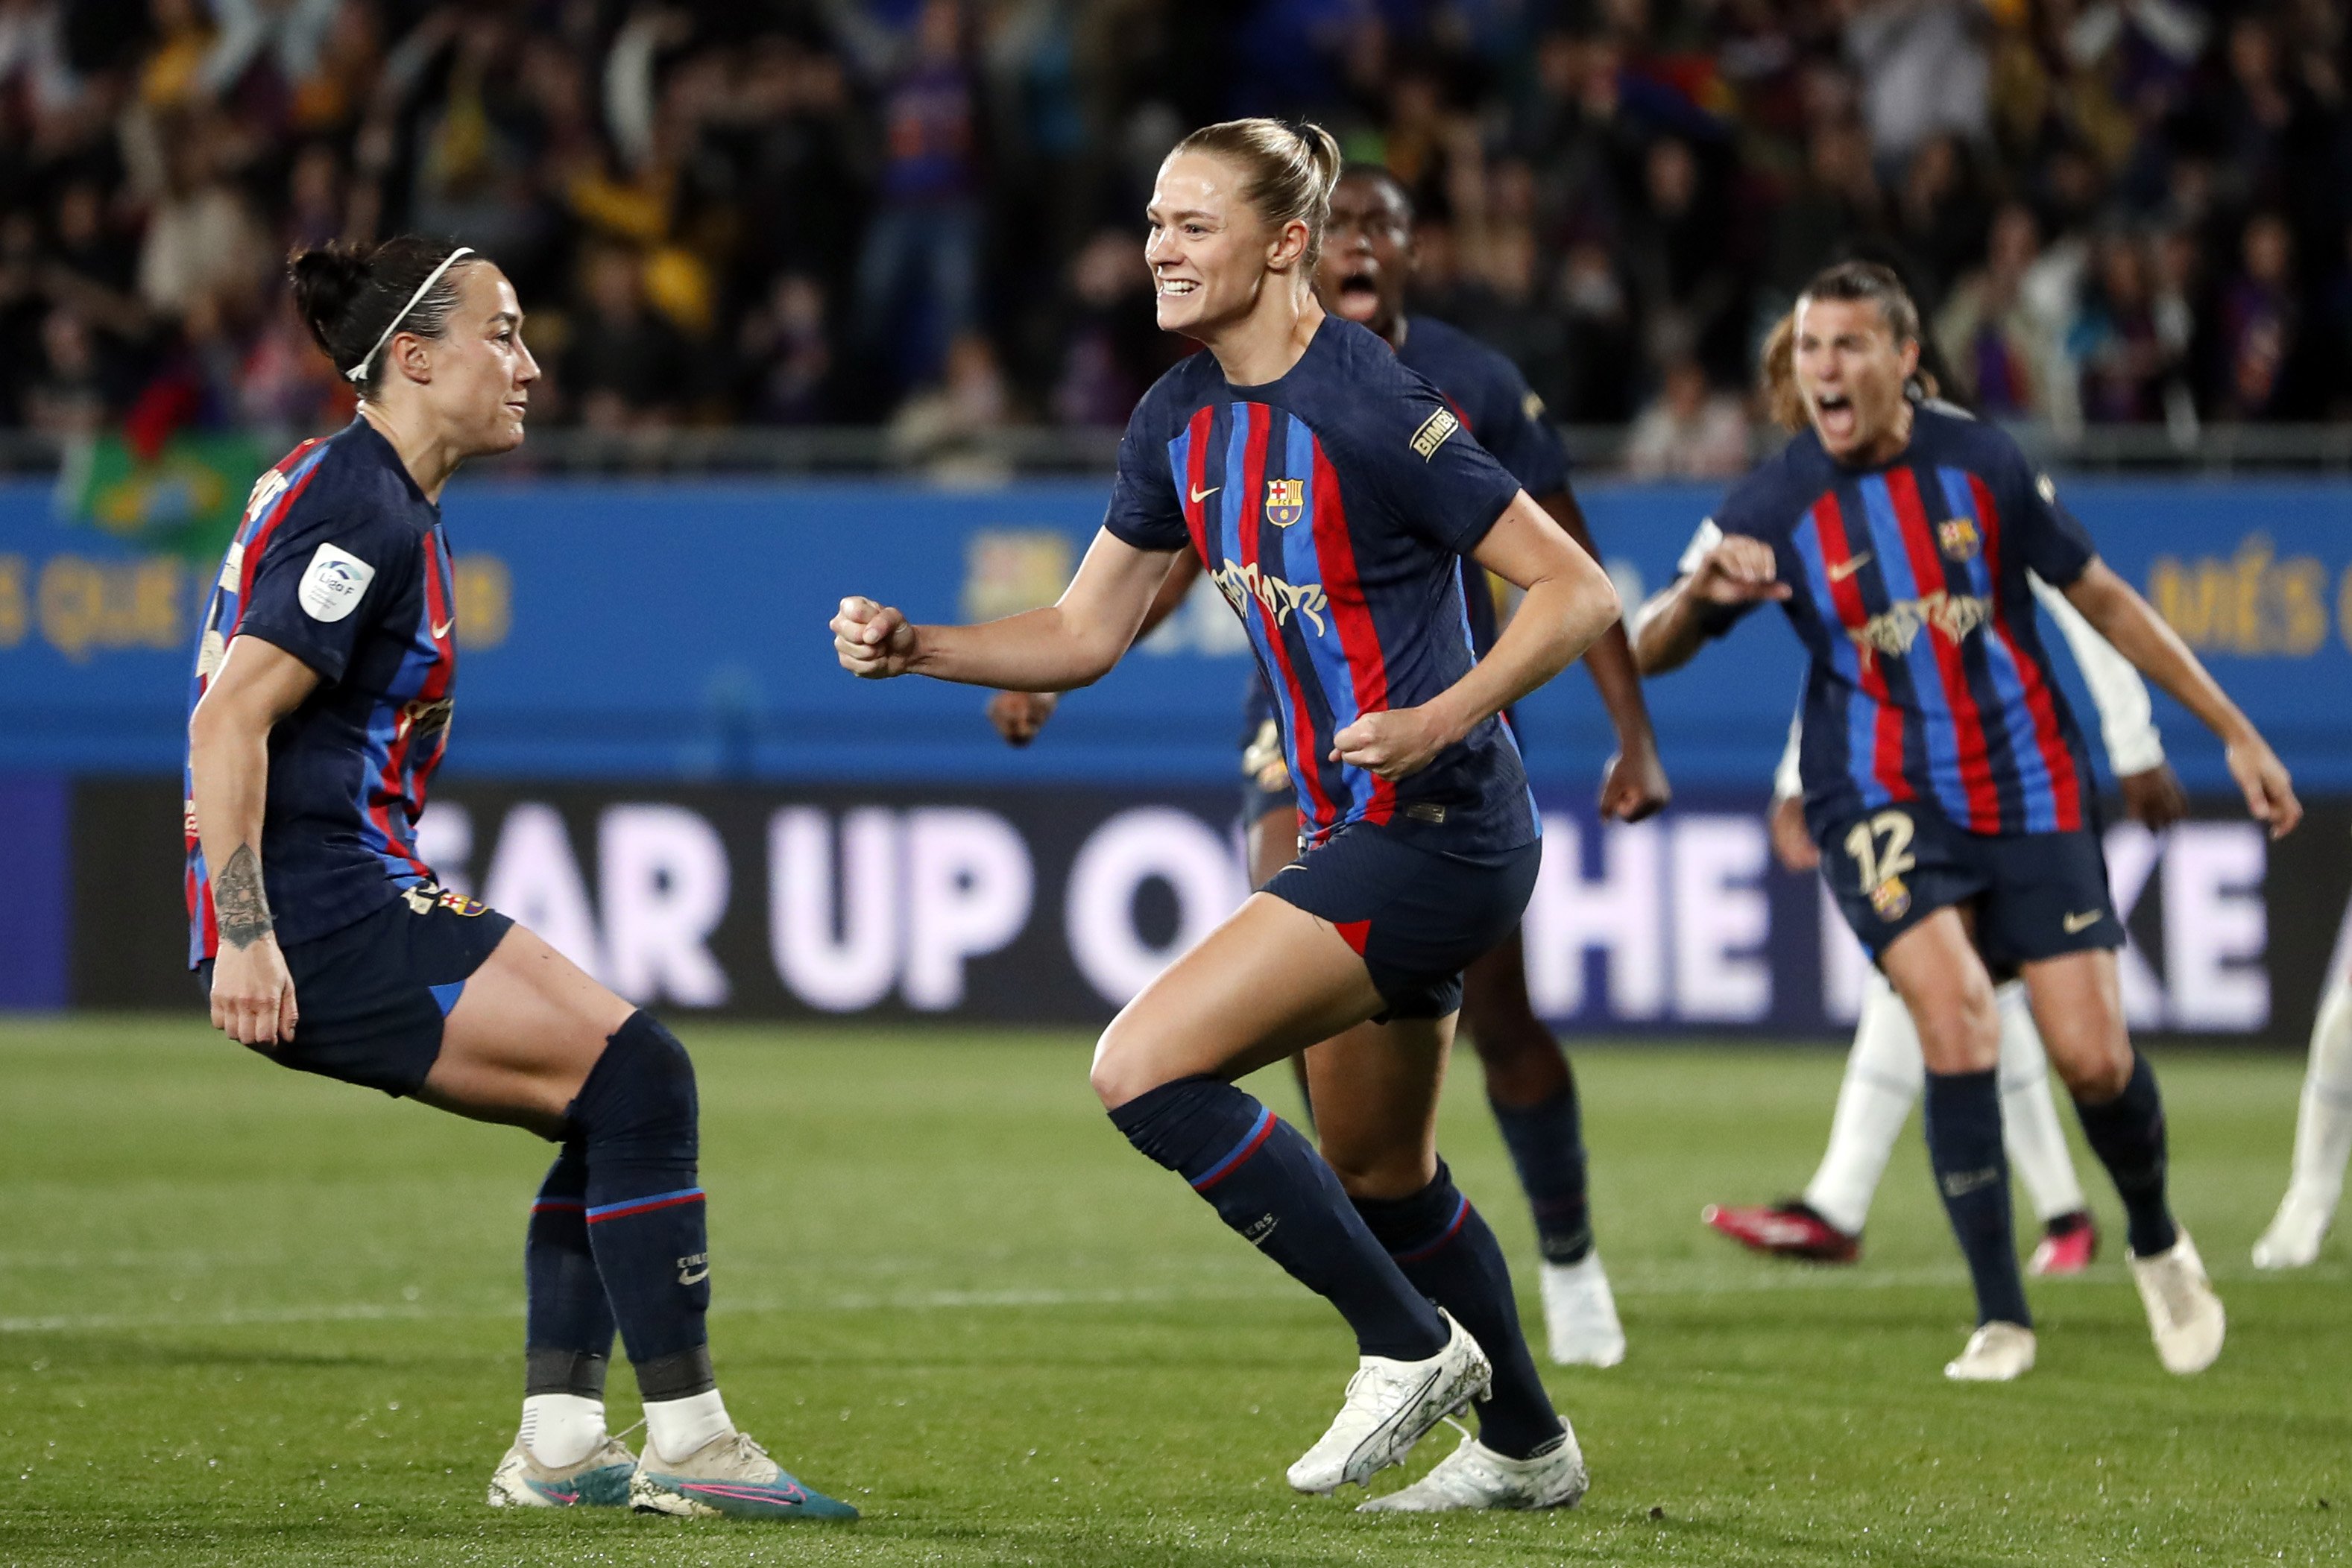 Triomf de líder del Barça femení que derrota el Reial Madrid (1-0) en el Clàssic